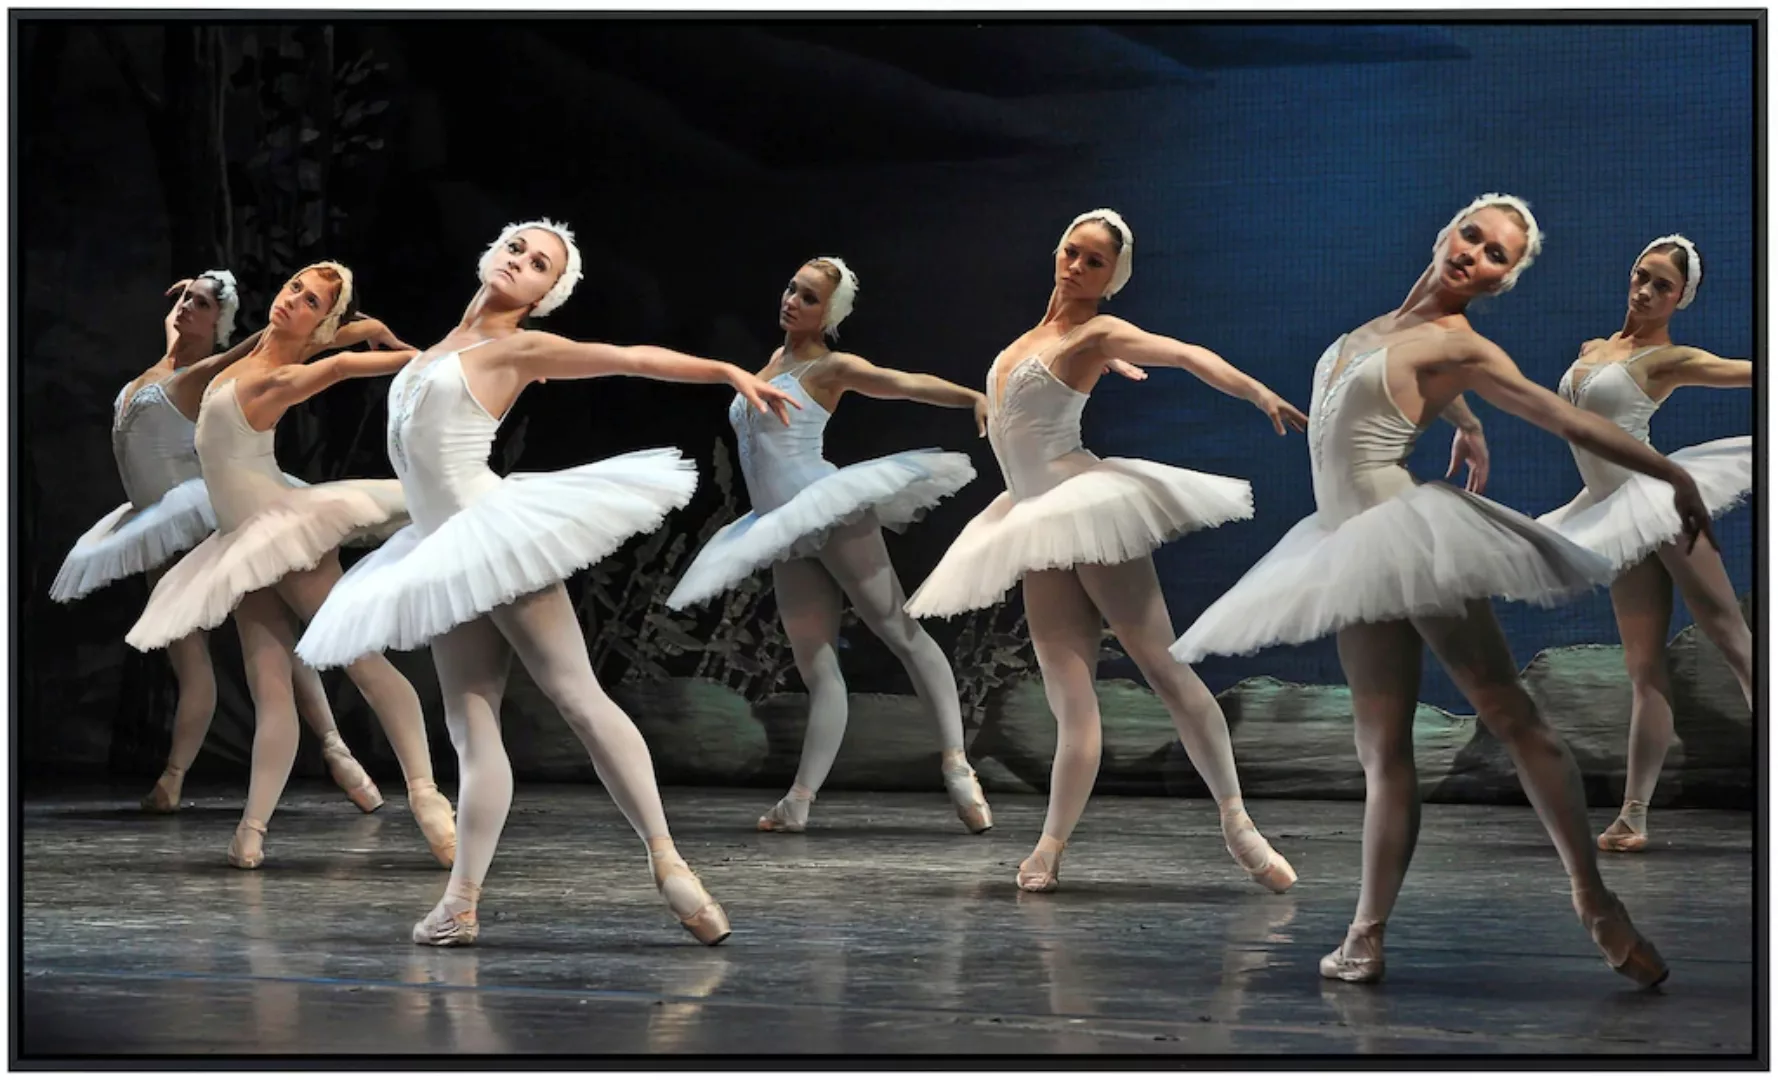 Papermoon Infrarotheizung »Ballette«, sehr angenehme Strahlungswärme günstig online kaufen